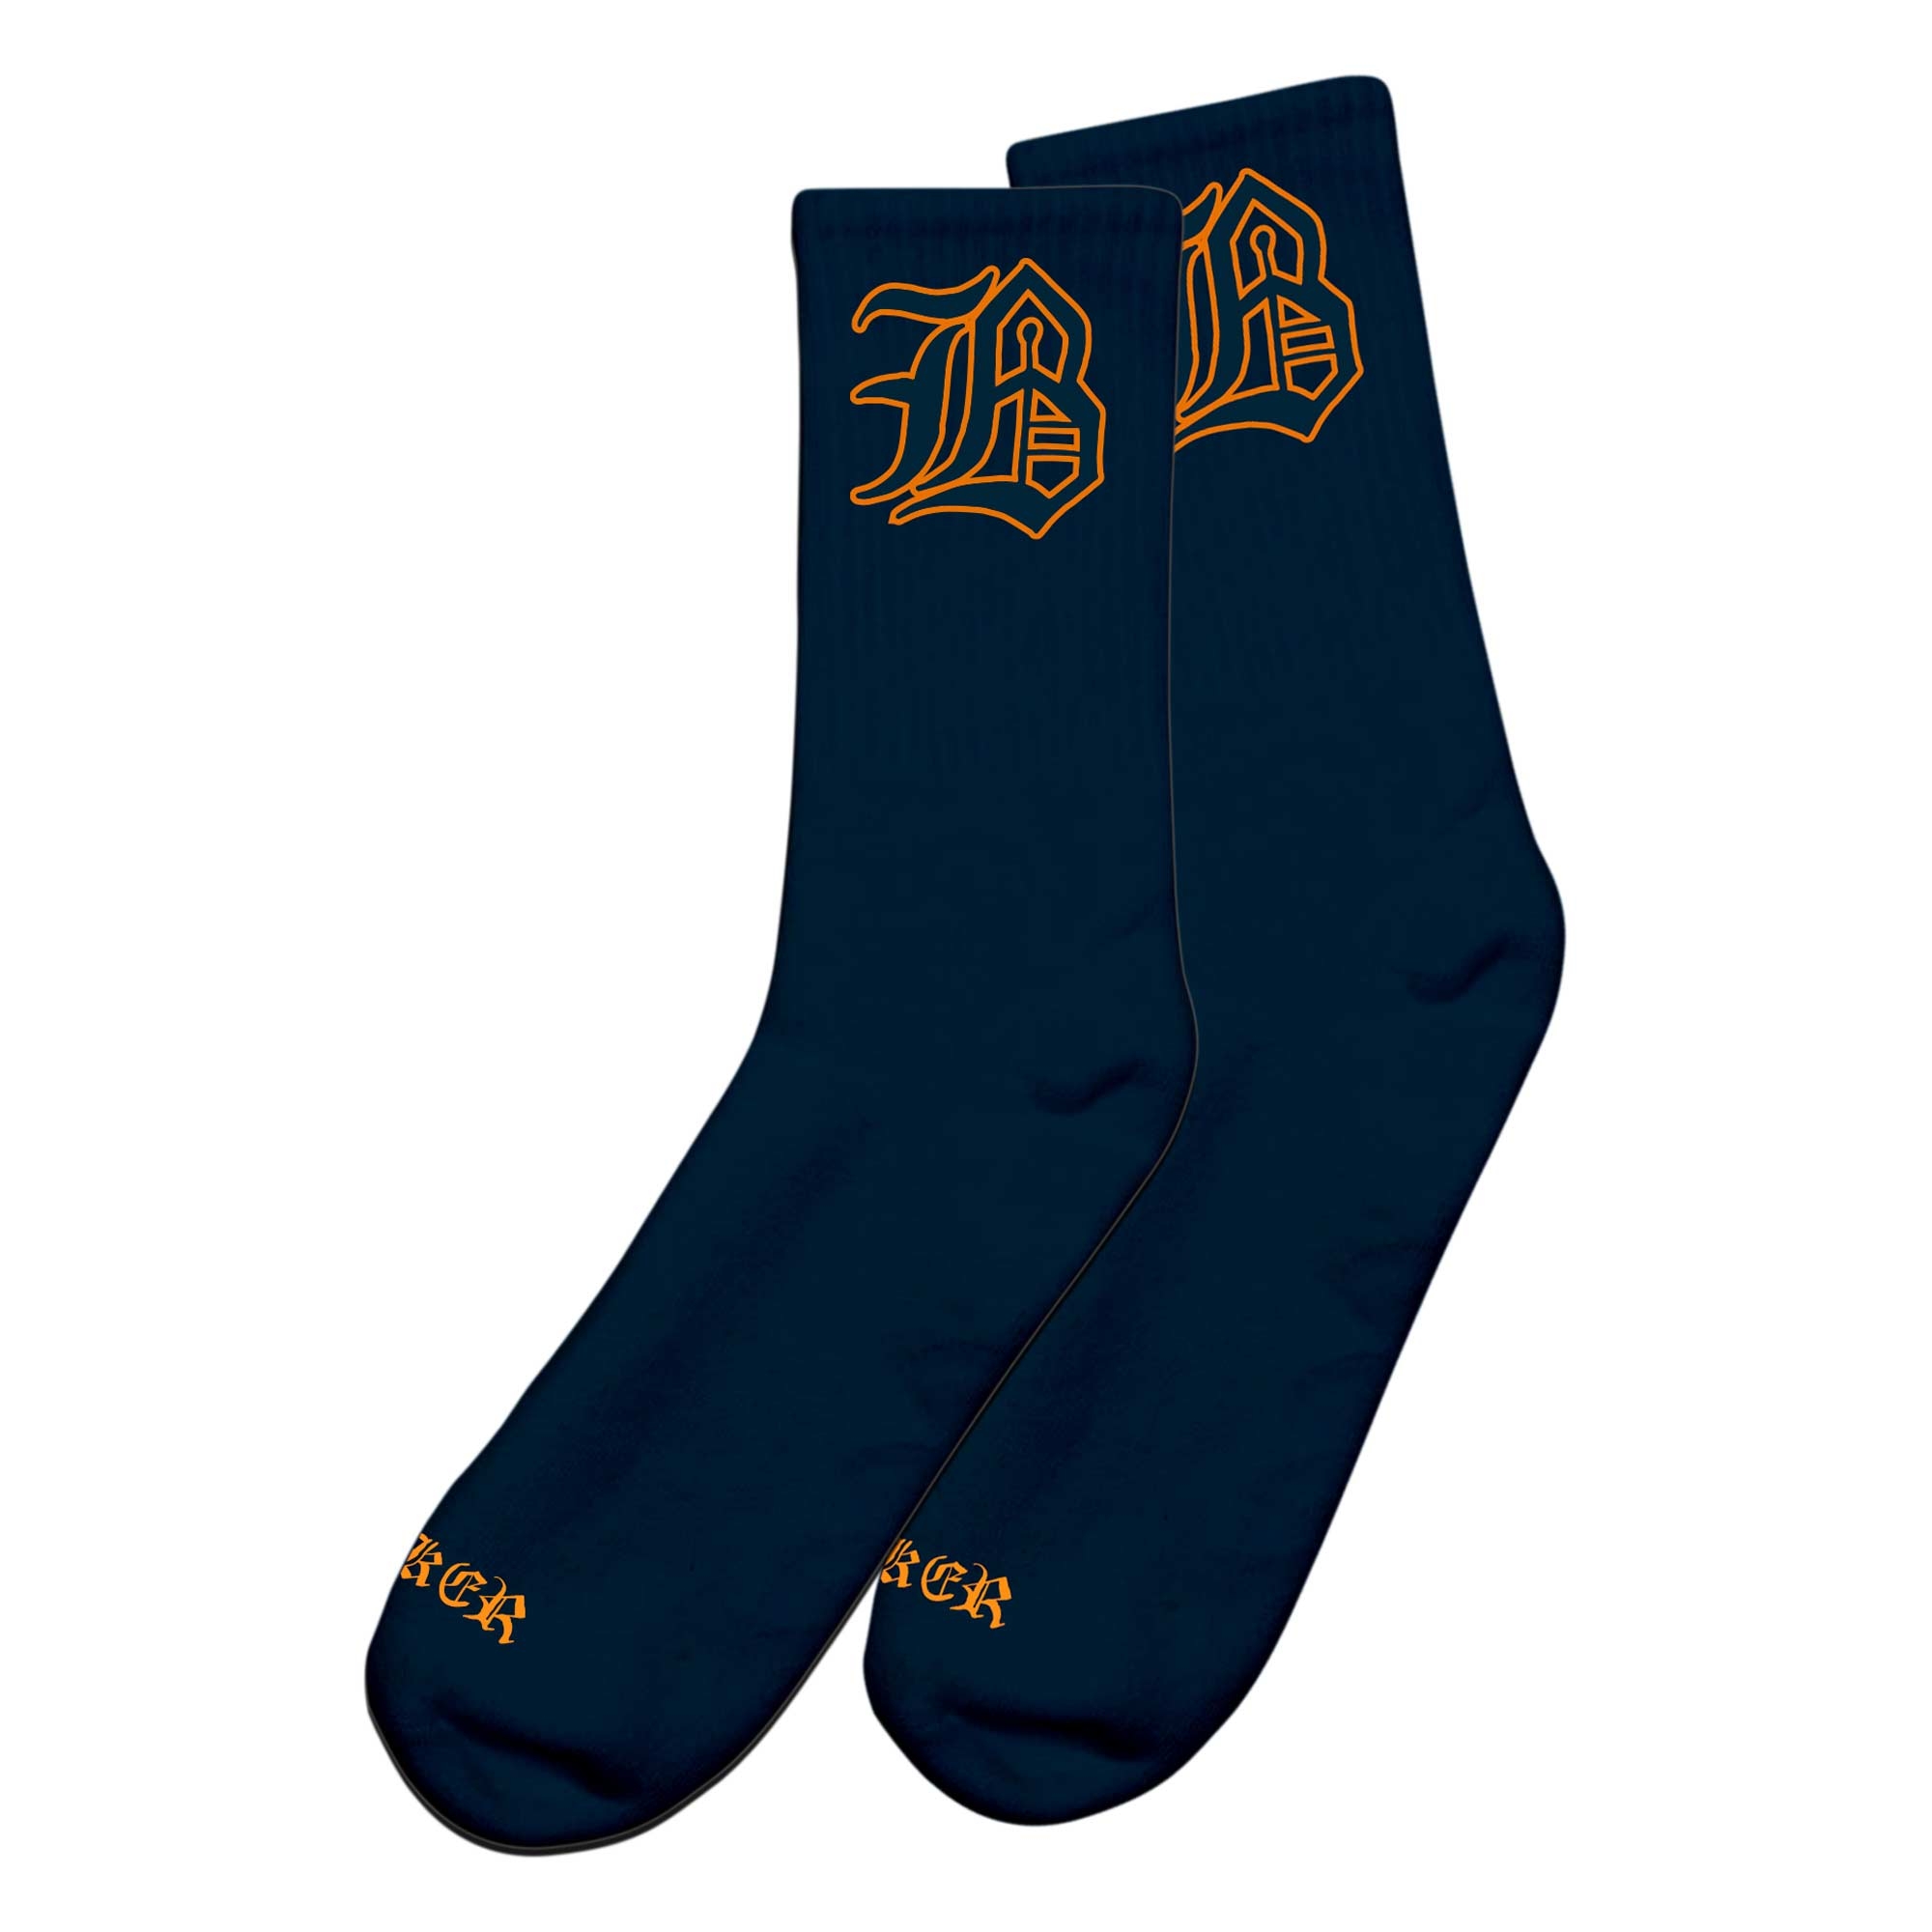 BAKER Socks BIG B, navy